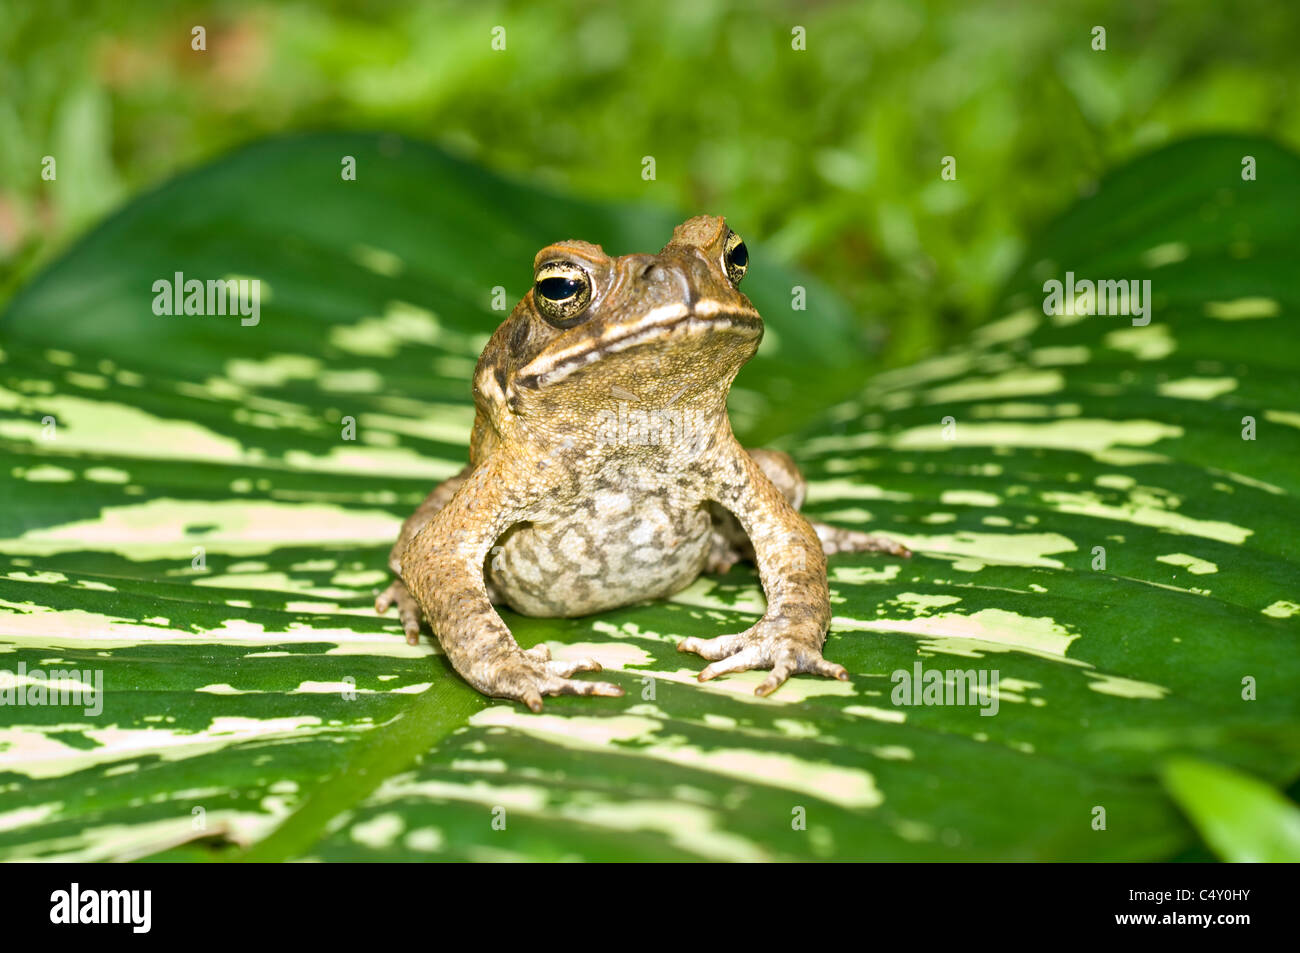 Cane toad (Bufo marinus) dans le Queensland en Australie, où il est une espèce envahissante Banque D'Images